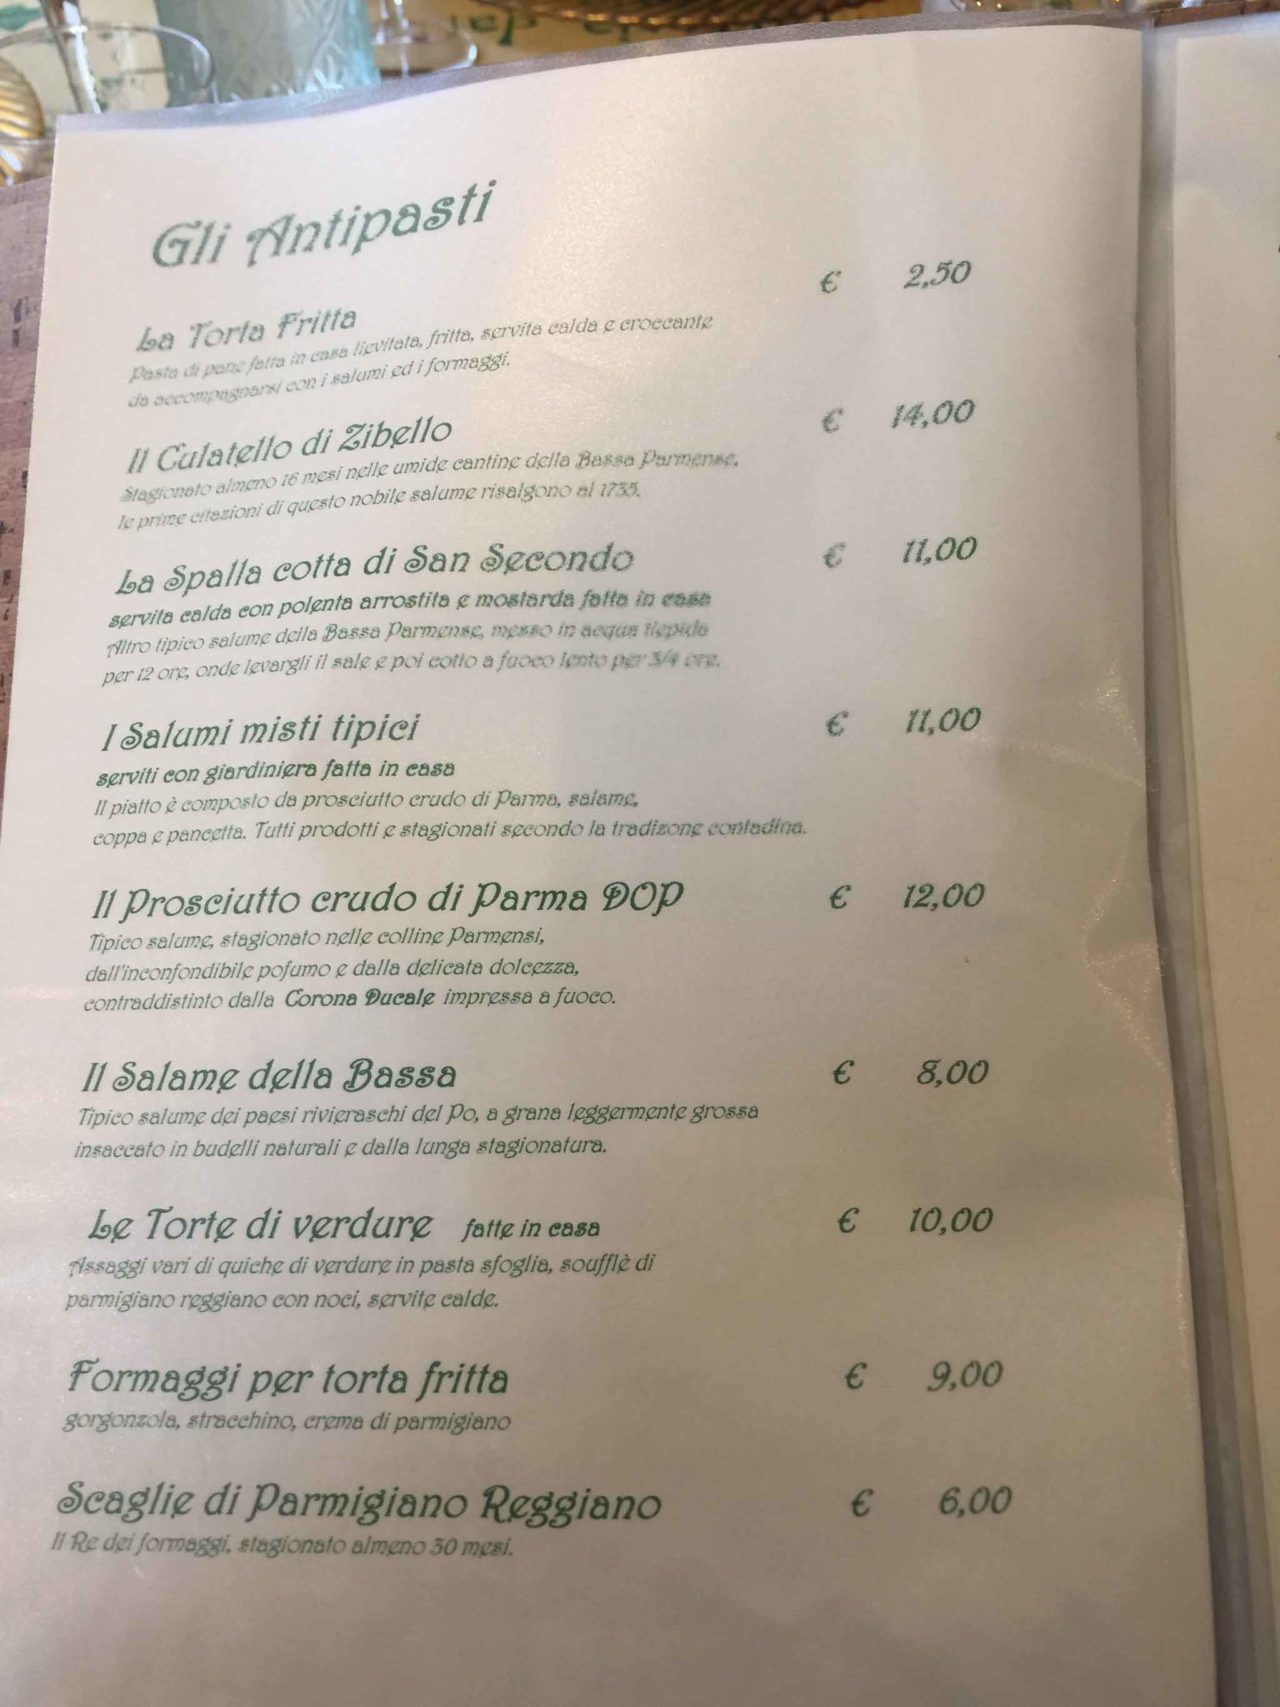 Trattoria dai Sibani a Chiusa Ferranda, Fidenza: il menu degli antipasti, con torta fritta e salumi